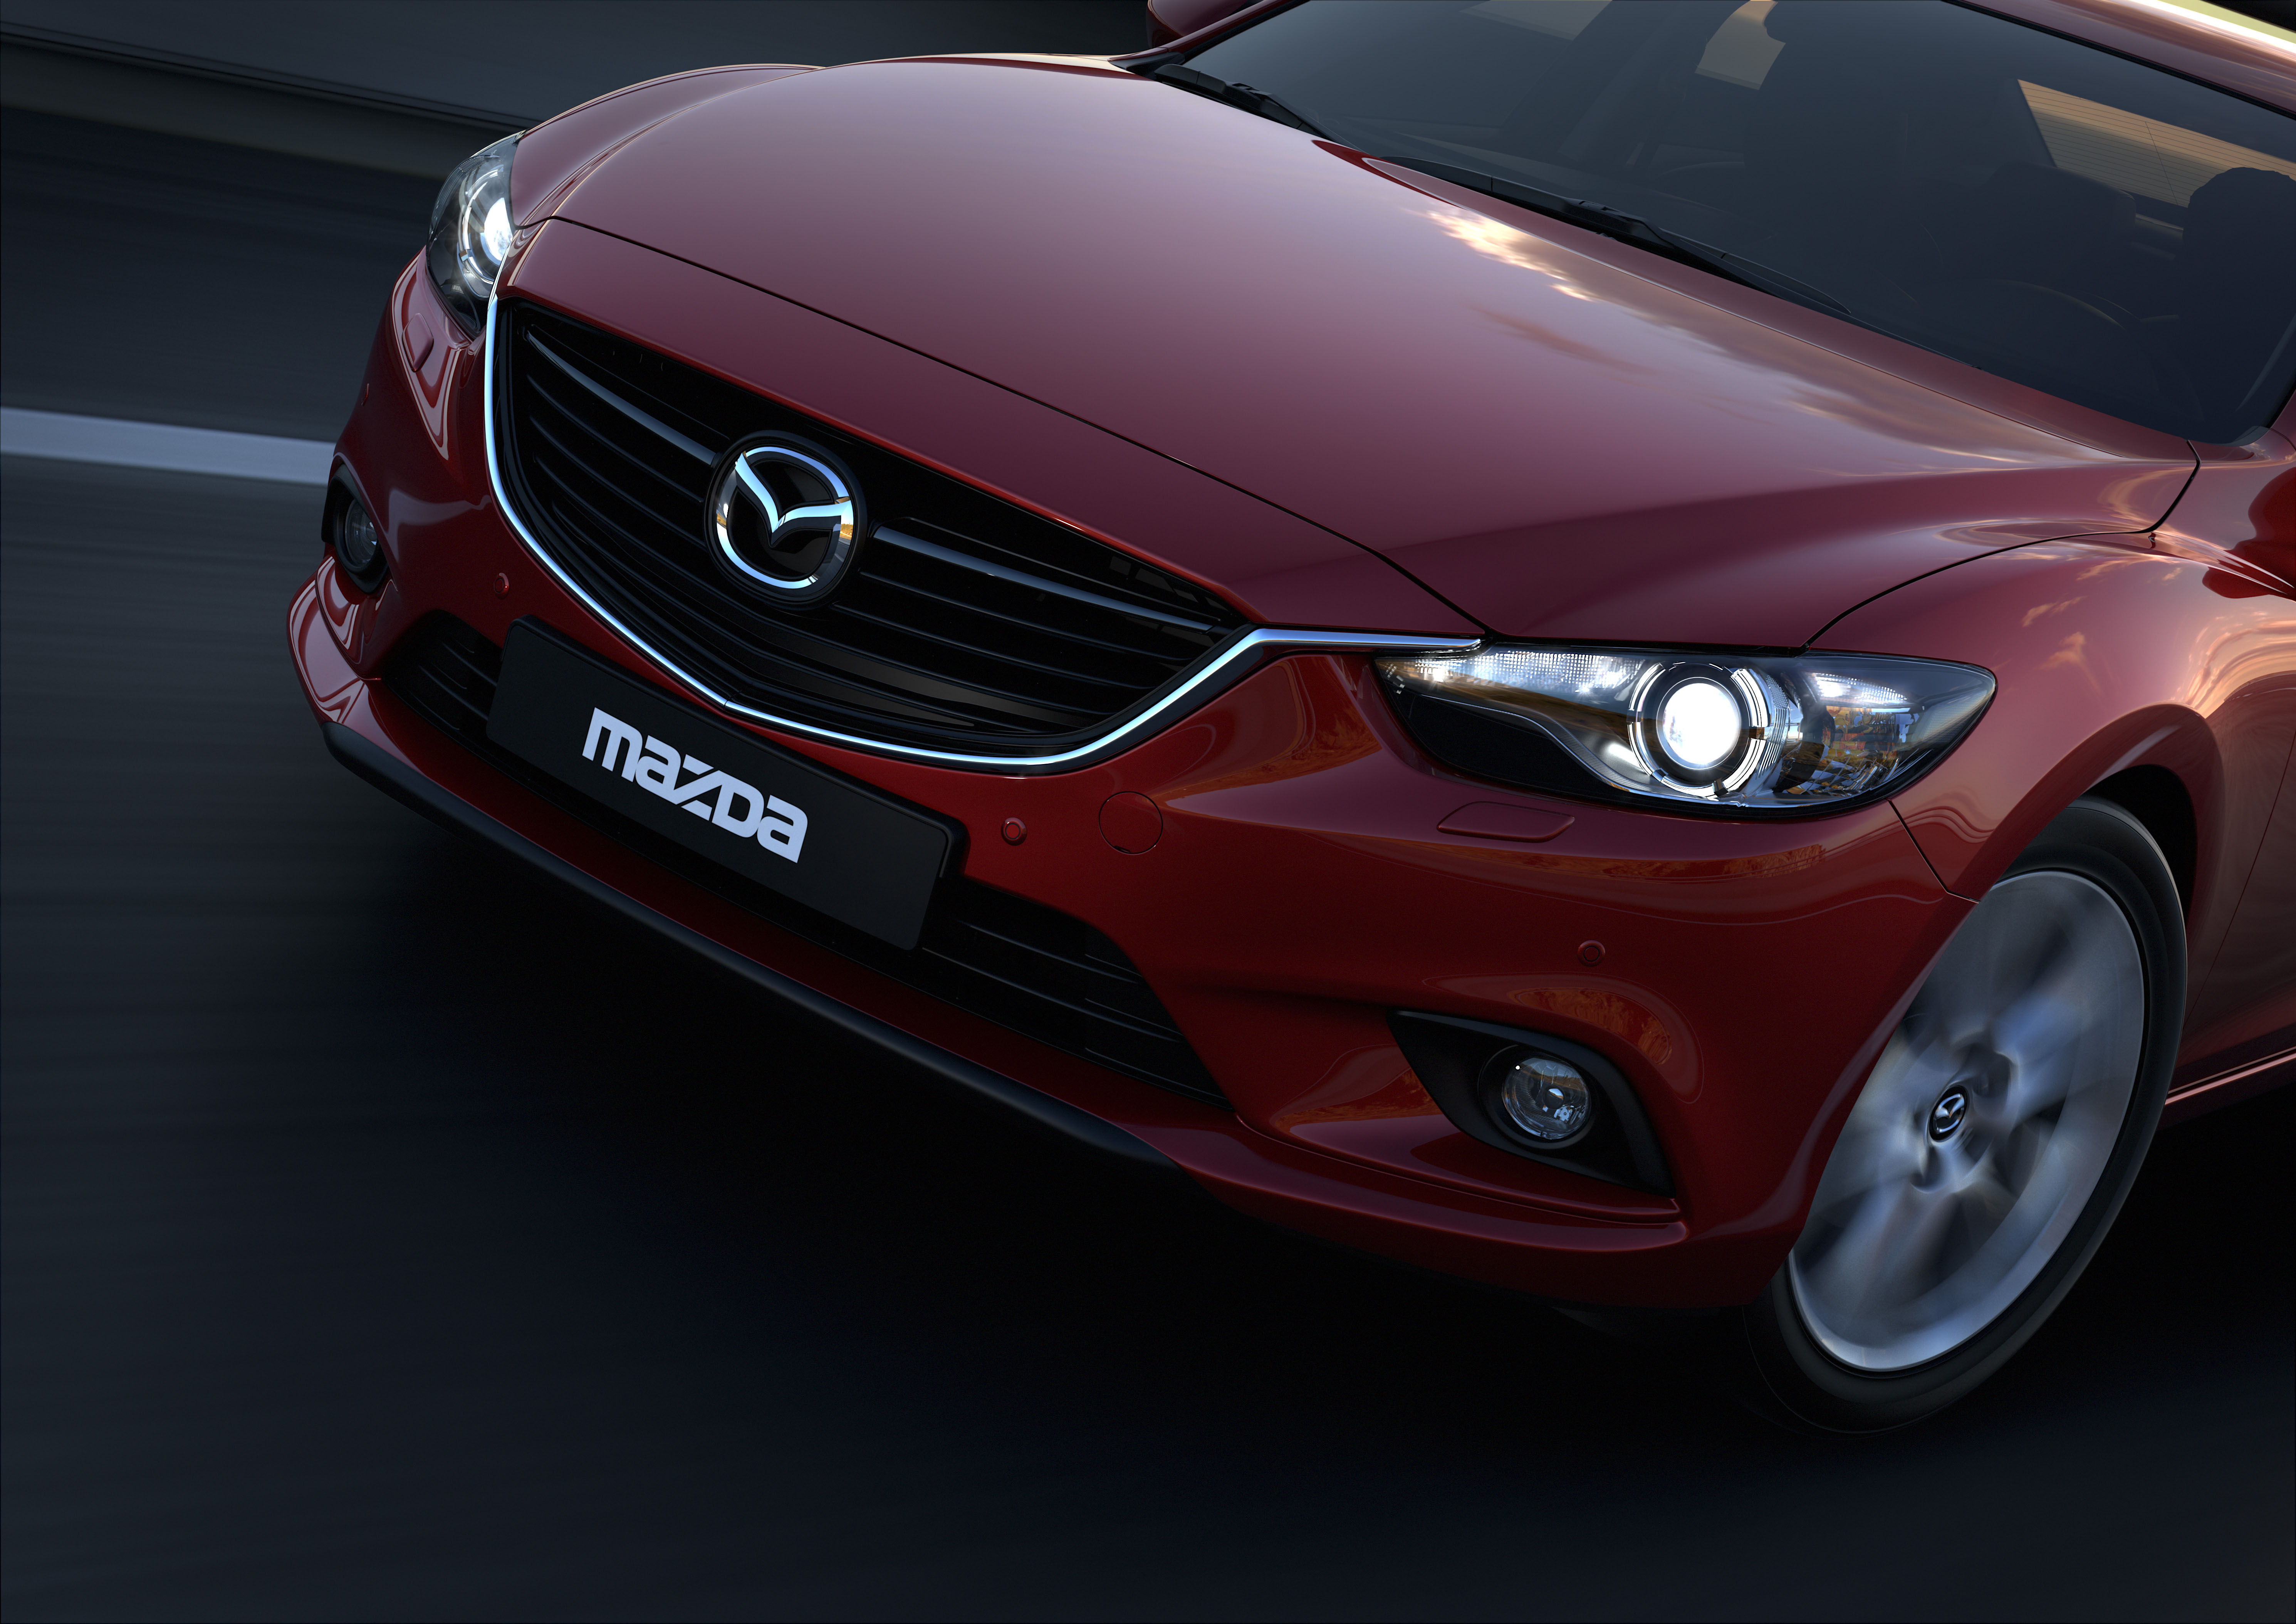 Red mazda. Mazda 6 2014. Mazda mazda6. 2013 Mazda 6 Takeri. Mazda 6 sedan.